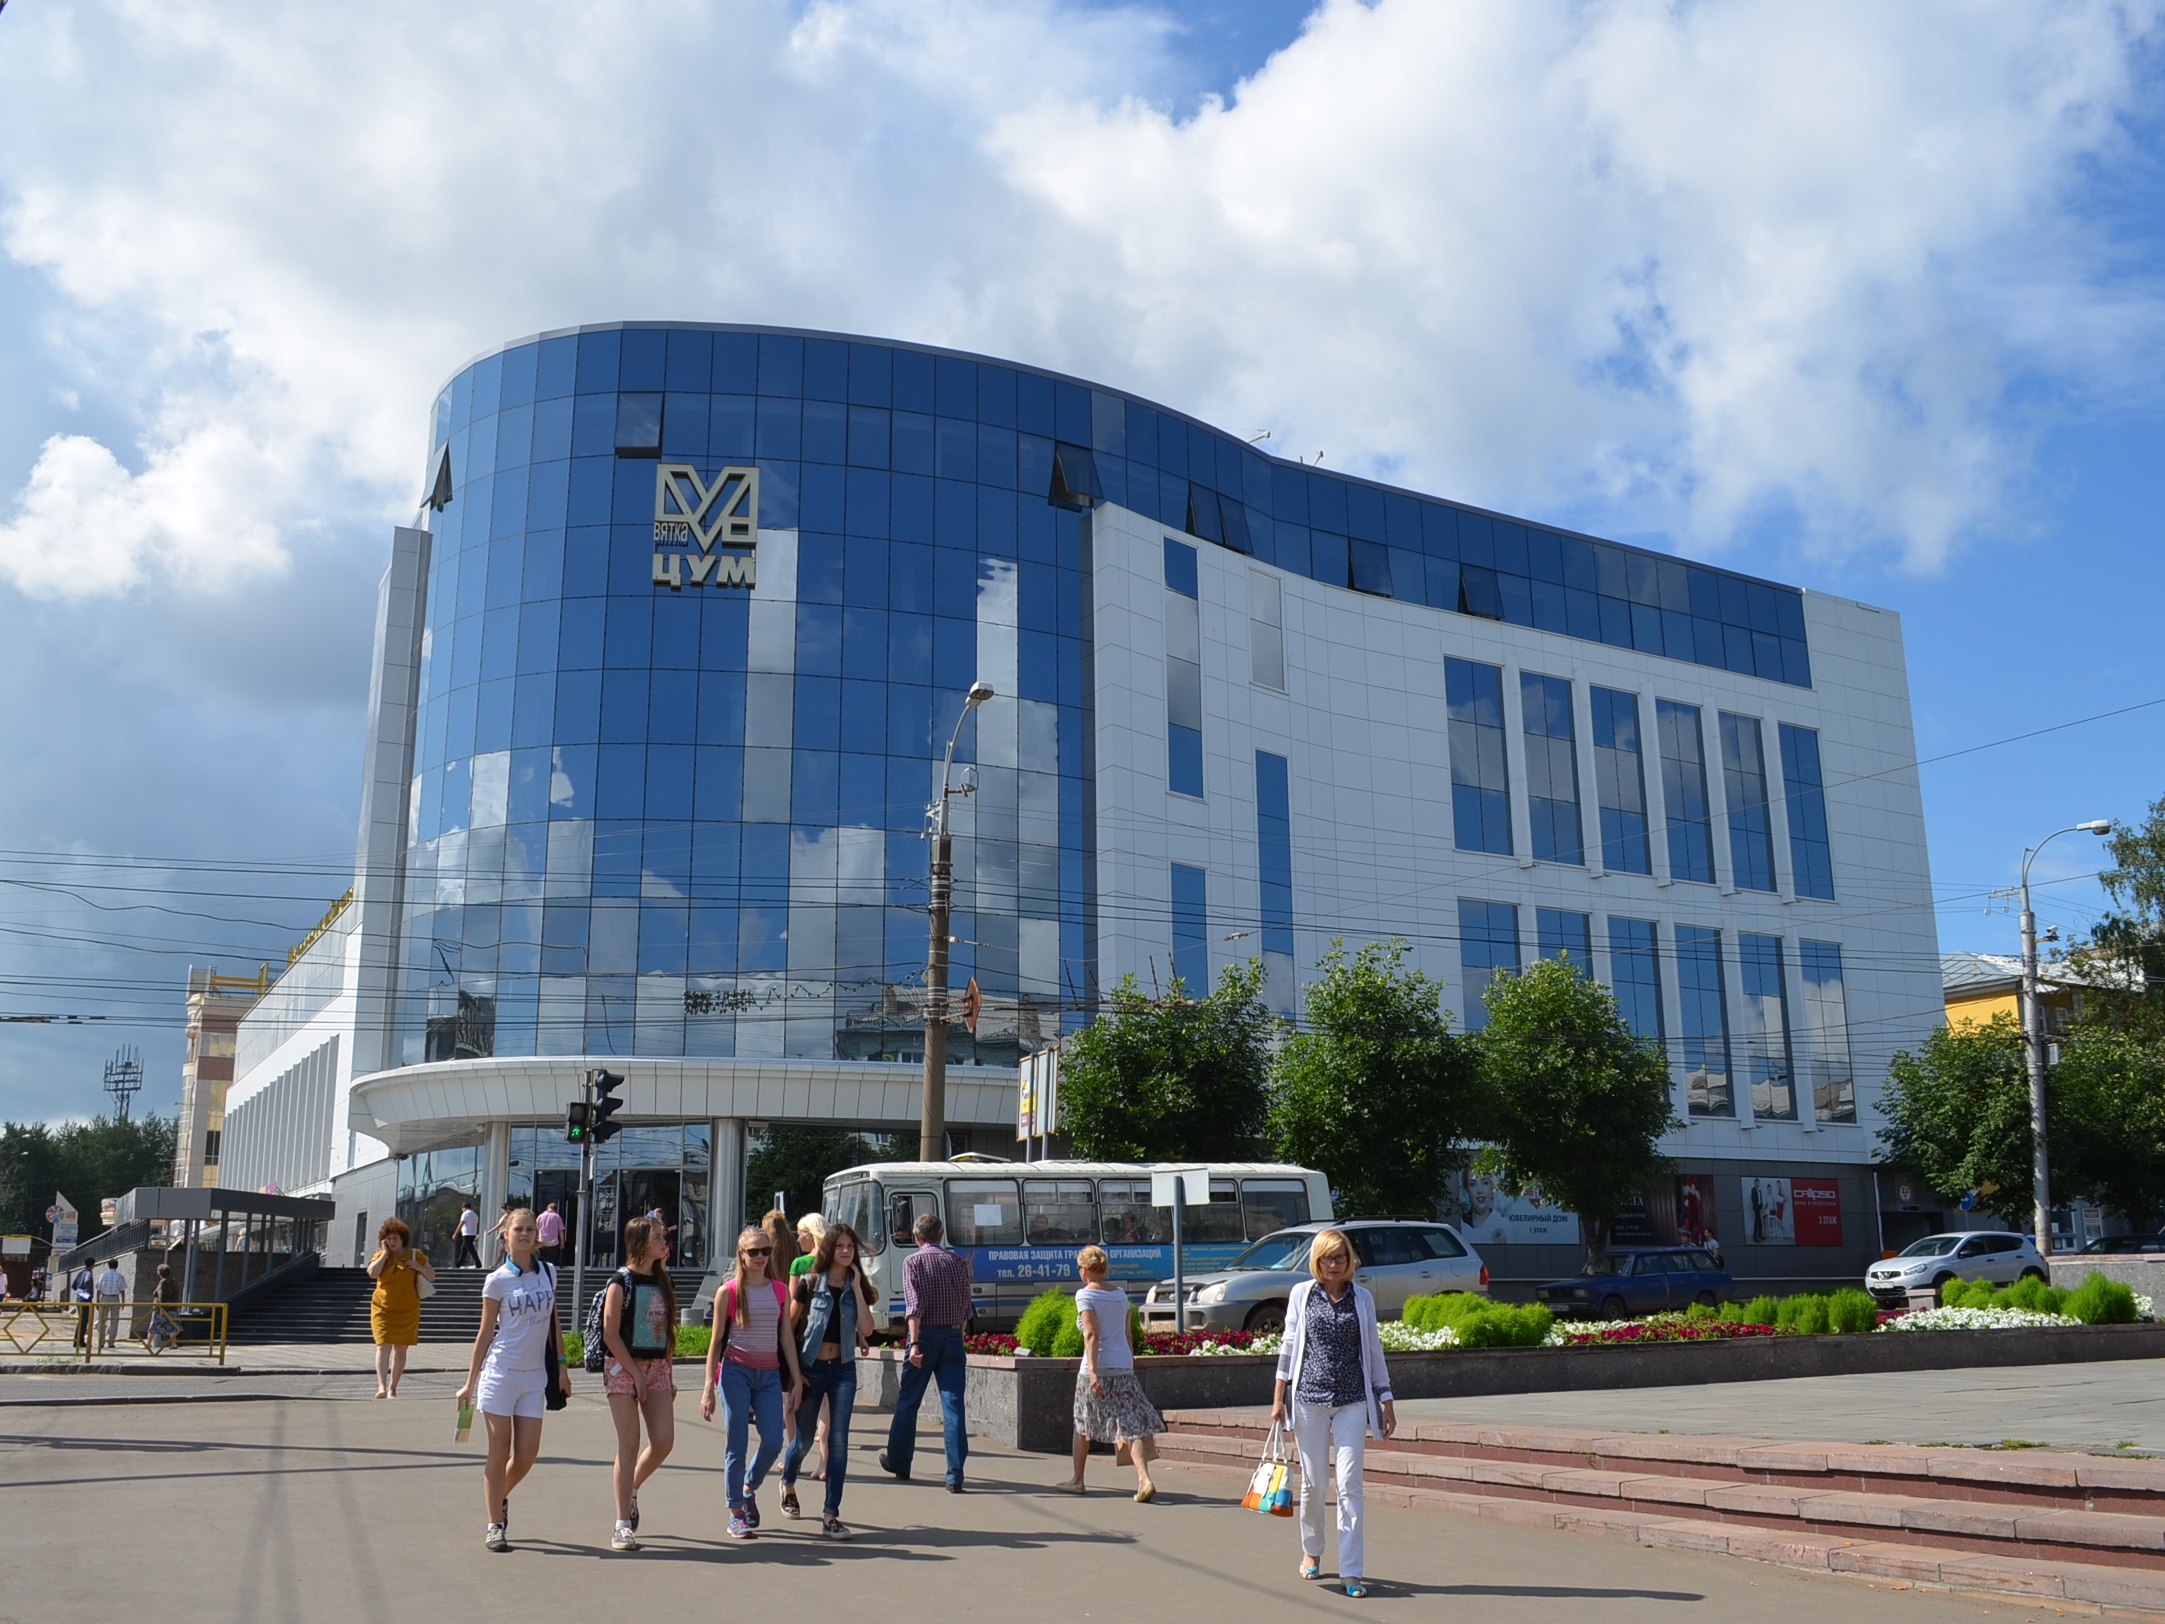 Вятка-ЦУМ — это первый в Кирове торговый центр, сочетающий историю классического универмага и современные технологические решения